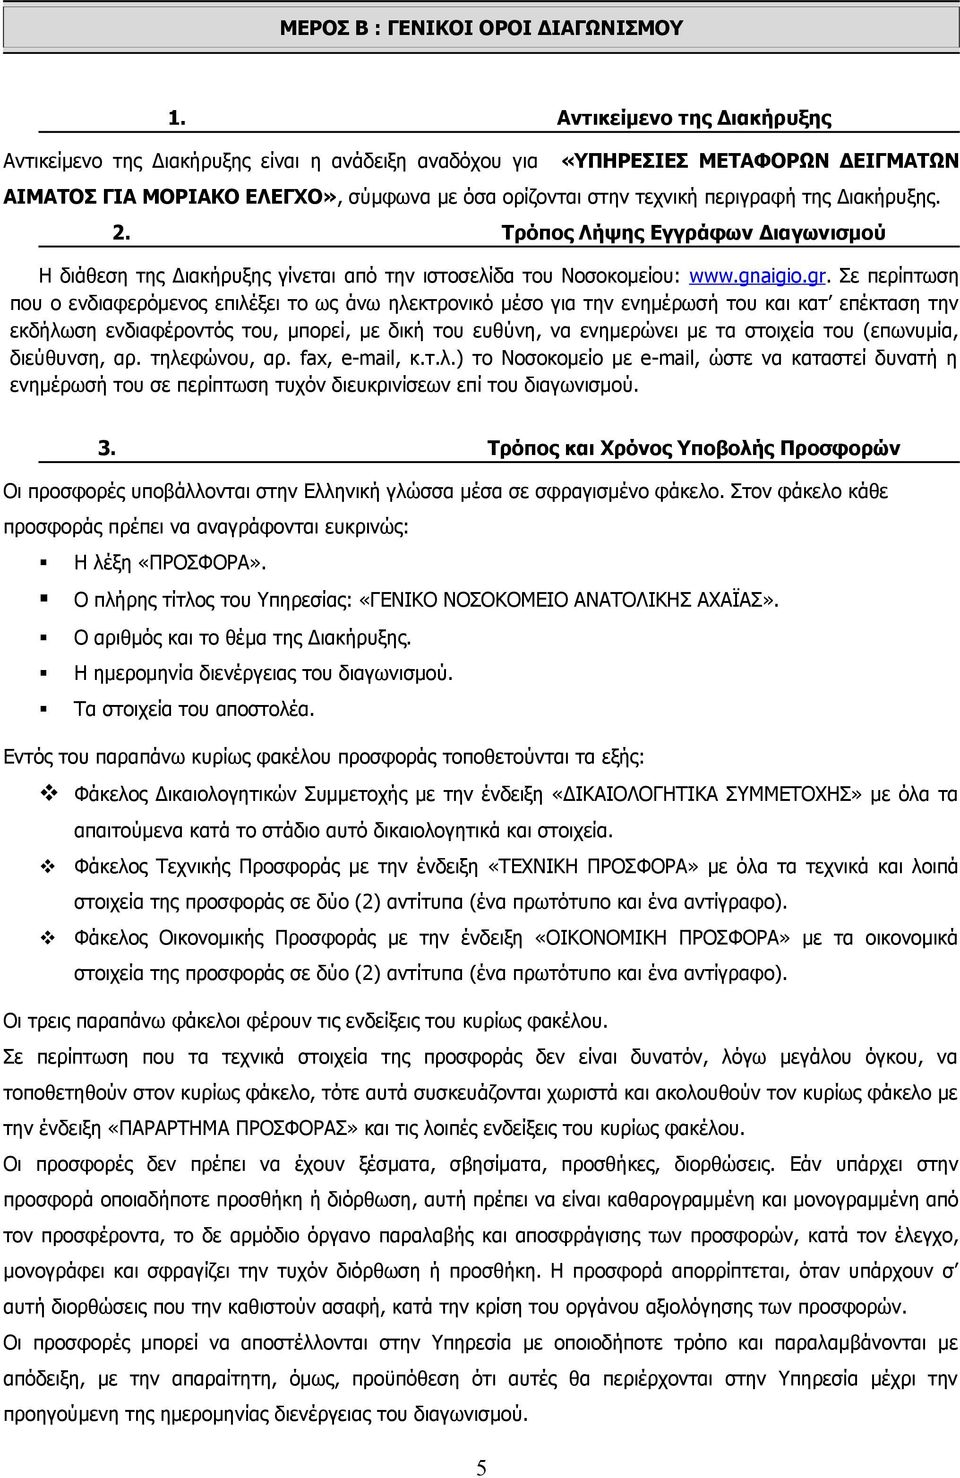 Διακήρυξης. 2. Τρόπος Λήψης Εγγράφων Διαγωνισμού Η διάθεση της Διακήρυξης γίνεται από την ιστοσελίδα του Νοσοκομείου: www.gnaigio.gr.